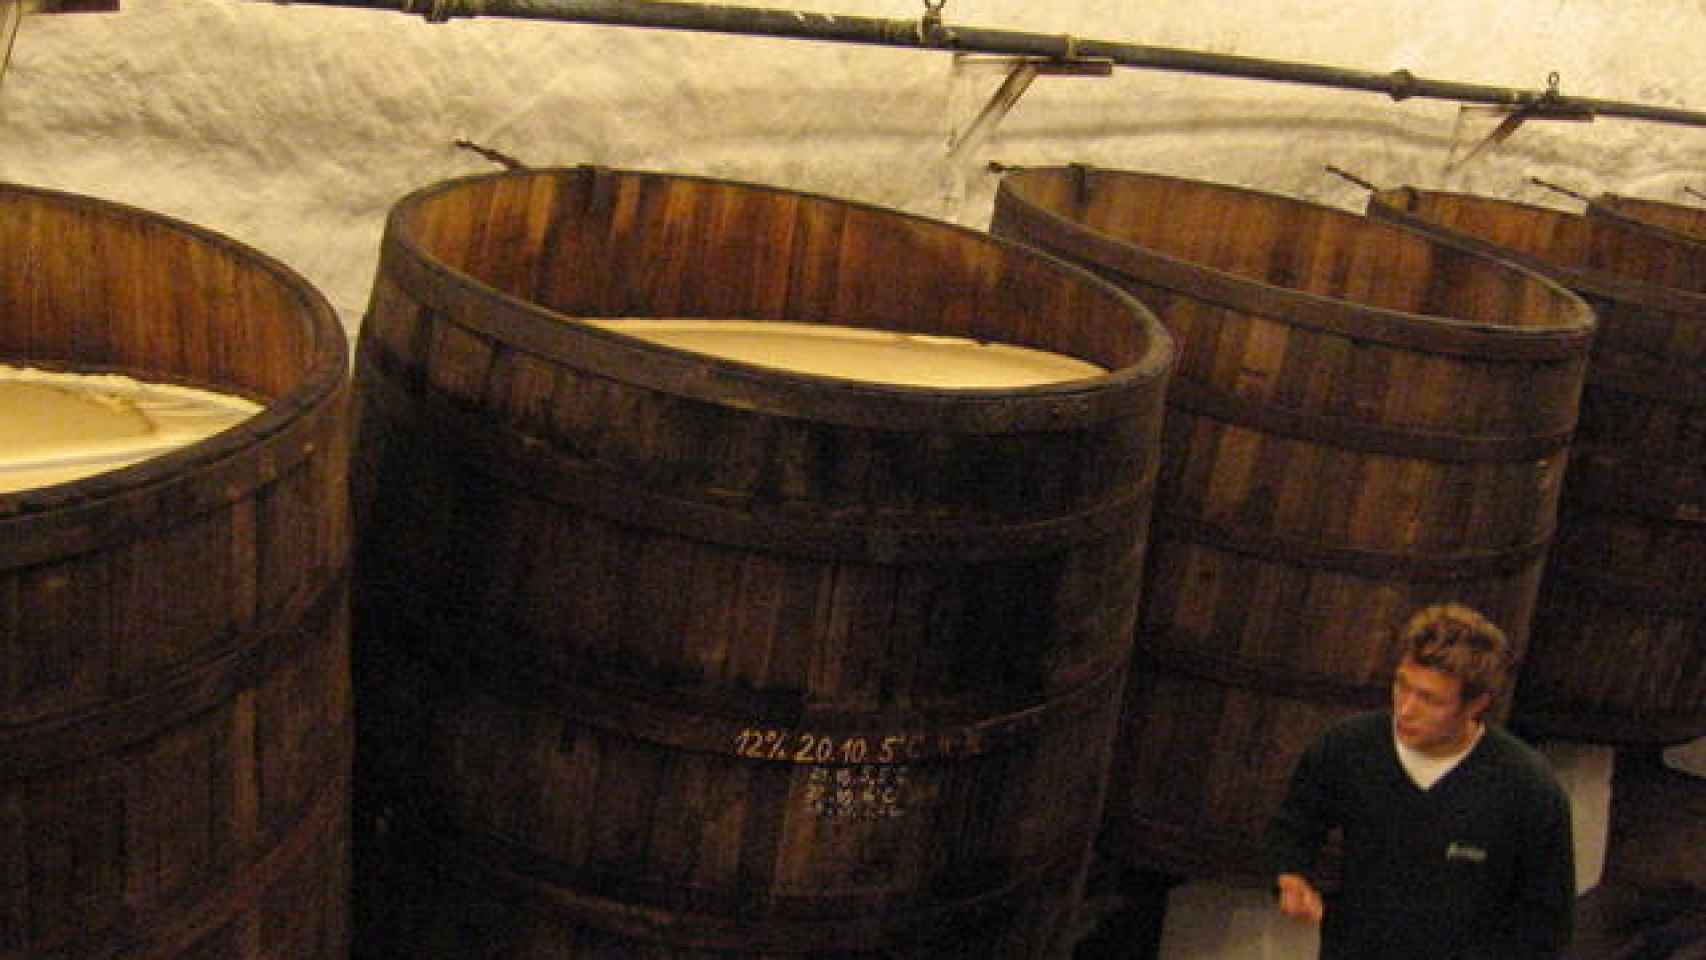 Los barriles abiertos en los que fermenta la cerveza checa Pilsner.